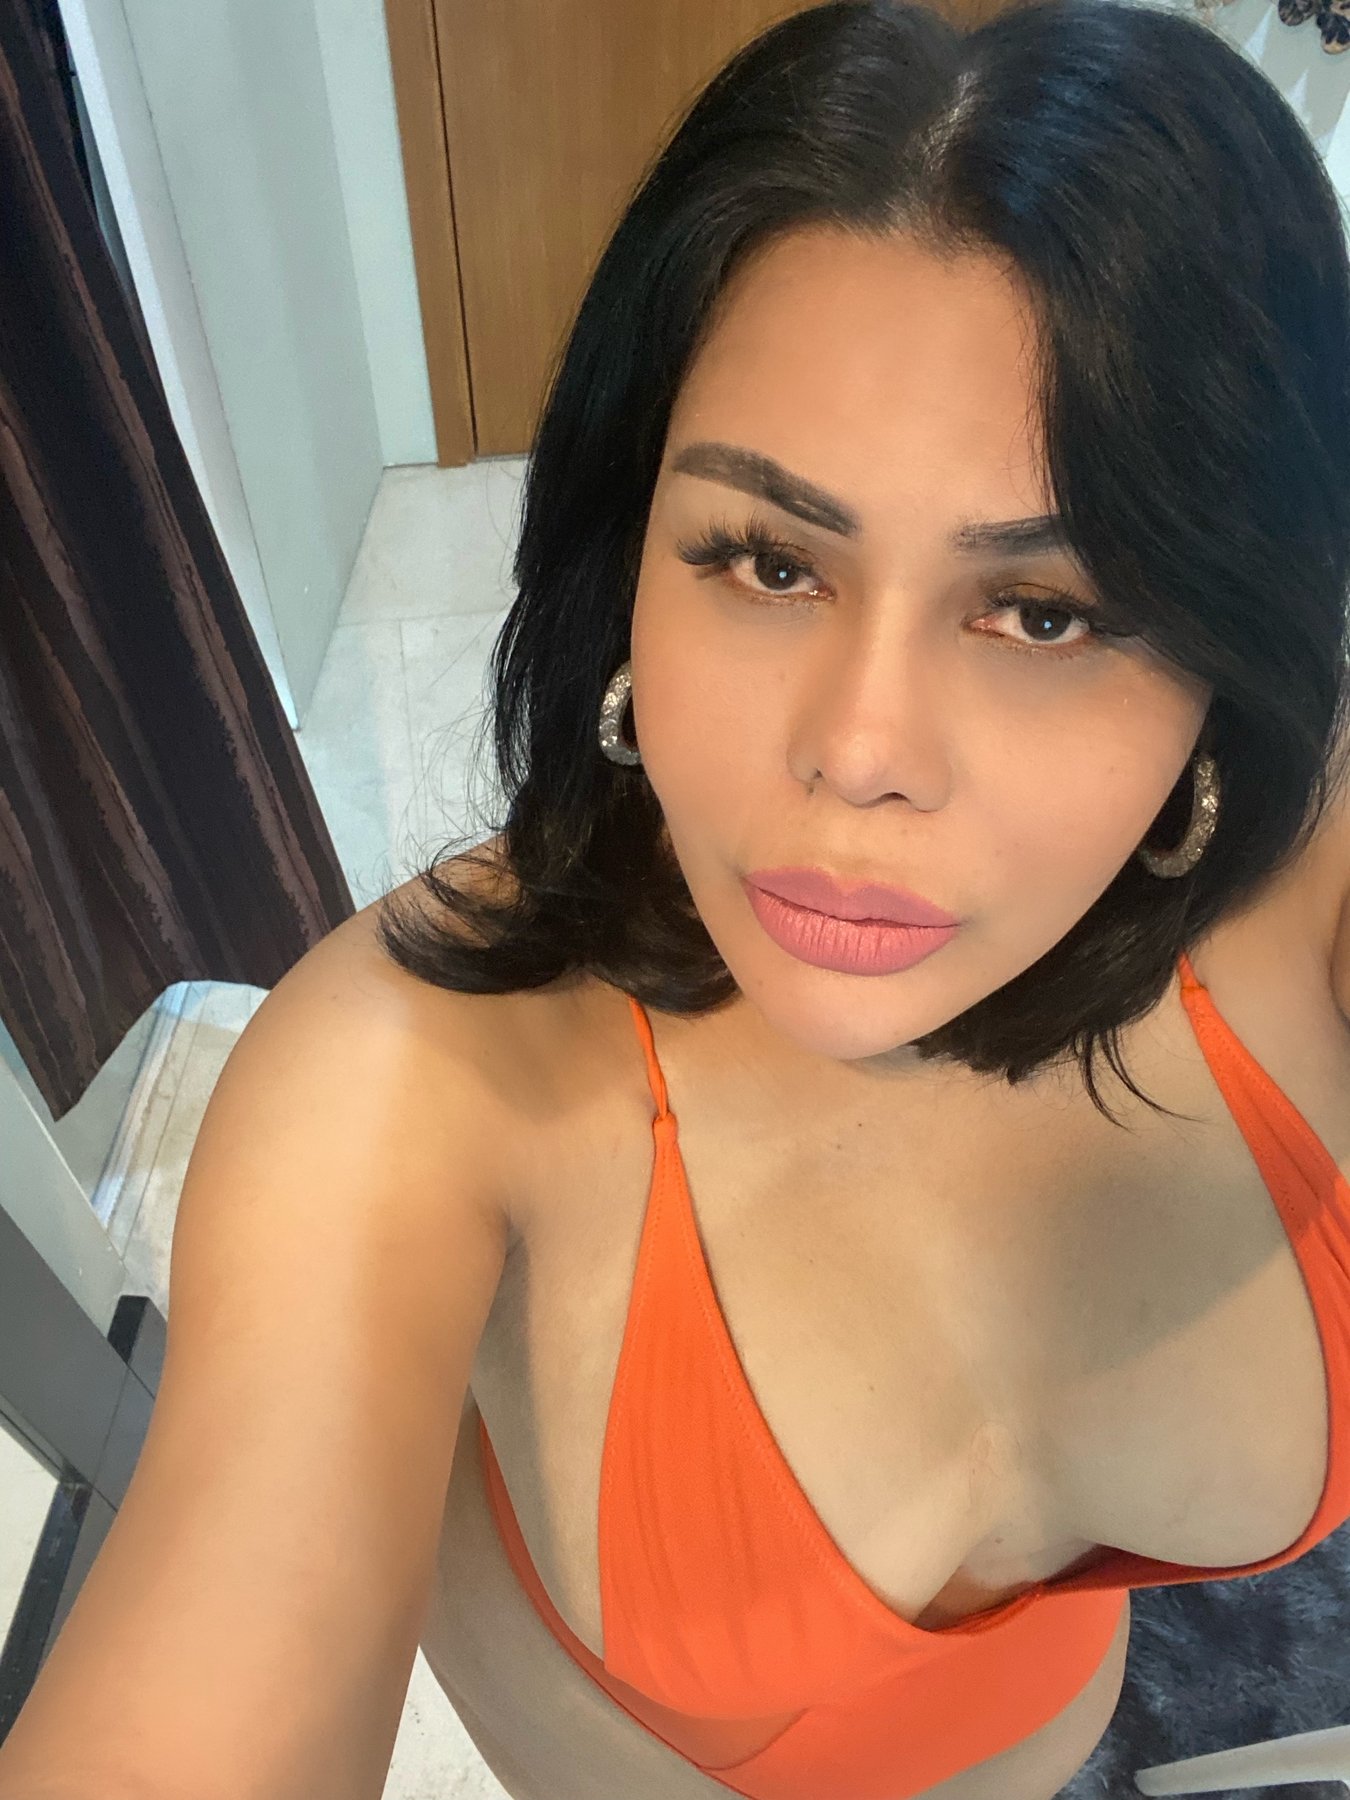 Kuala Lumpur Ladyboy - Shemale Sexy Rossa, Malaysian Transsexual escort in Kuala Lumpur